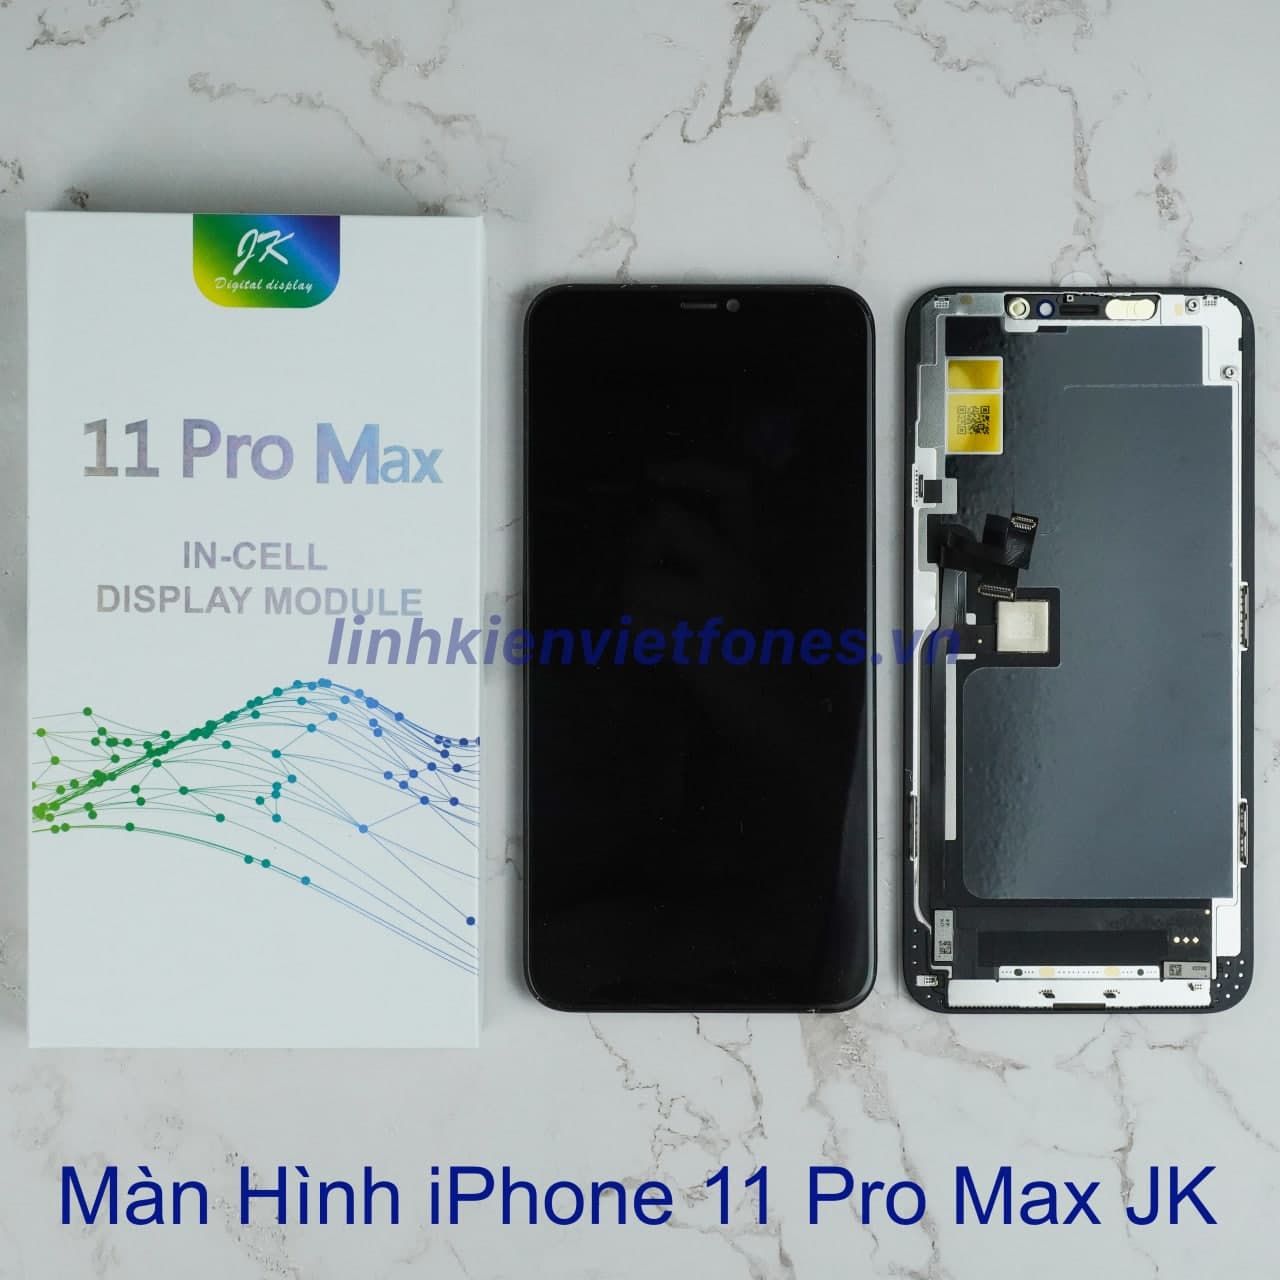 Phẩu thuật IP 12 Pro Max SO SÁNH linh kiện với IP 11 Pro Max | Review sản  phẩm